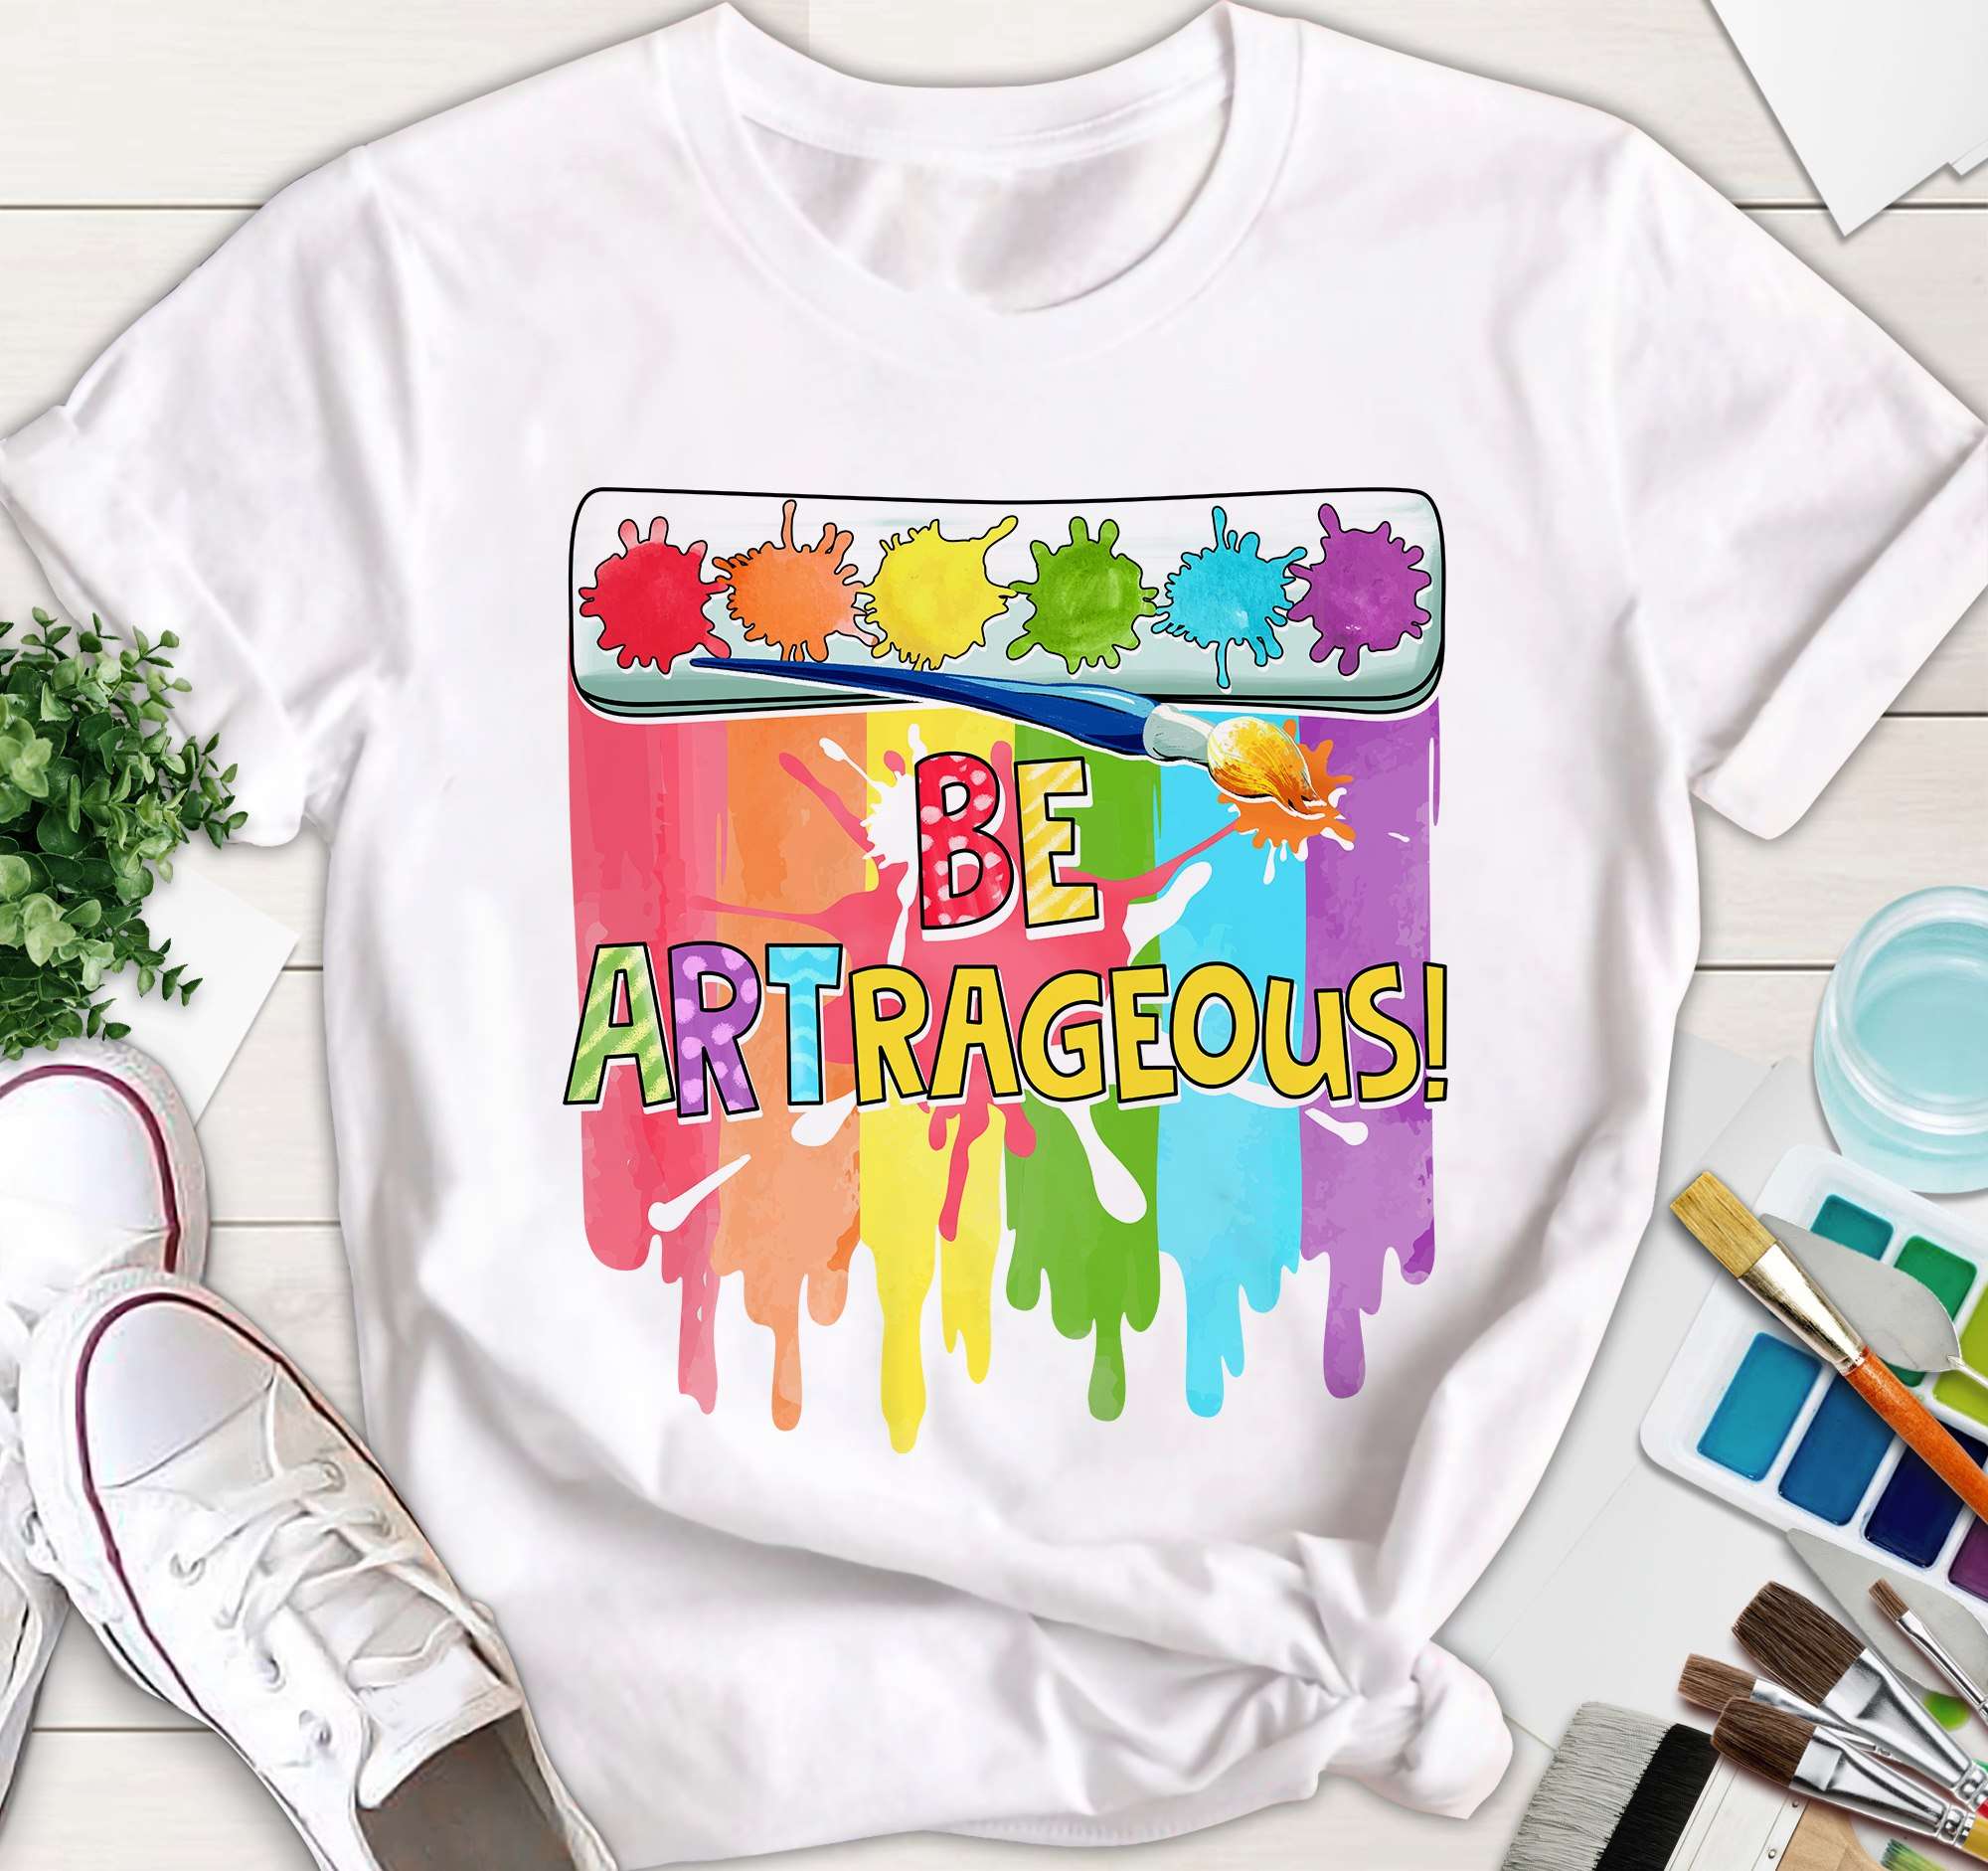 Be artrageous - Colorful art, love being an artist